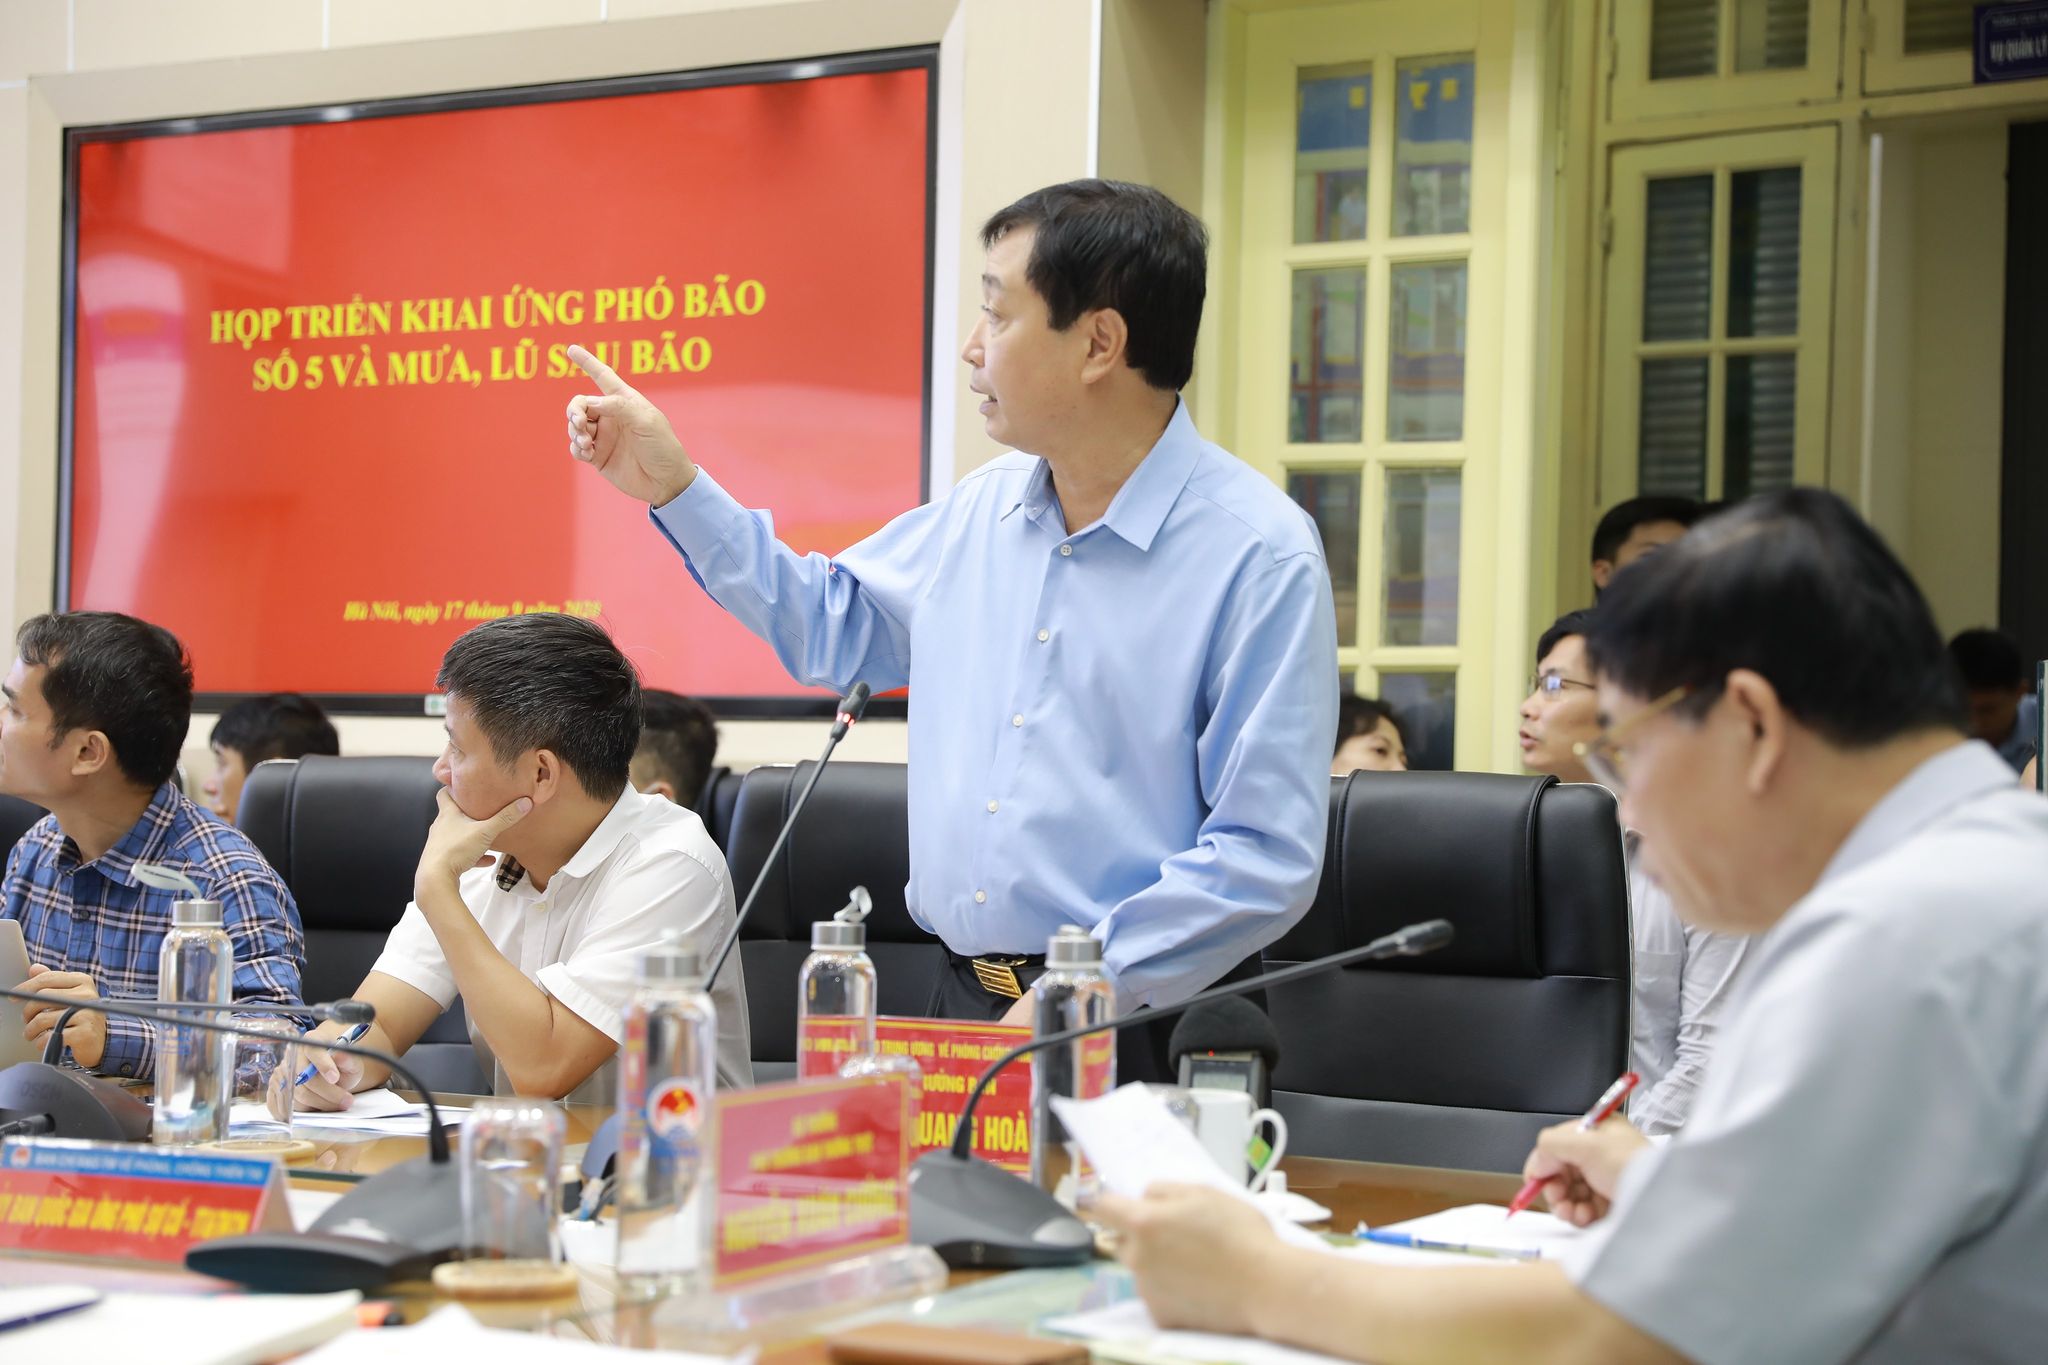   Ông Trần Quang Hoài Tổng cục trưởng Tổng cục Phòng chống thiên tai nói về việc sơ tán trên 1,1 triệu người tránh bão - Ảnh: VGP/Đỗ Hương